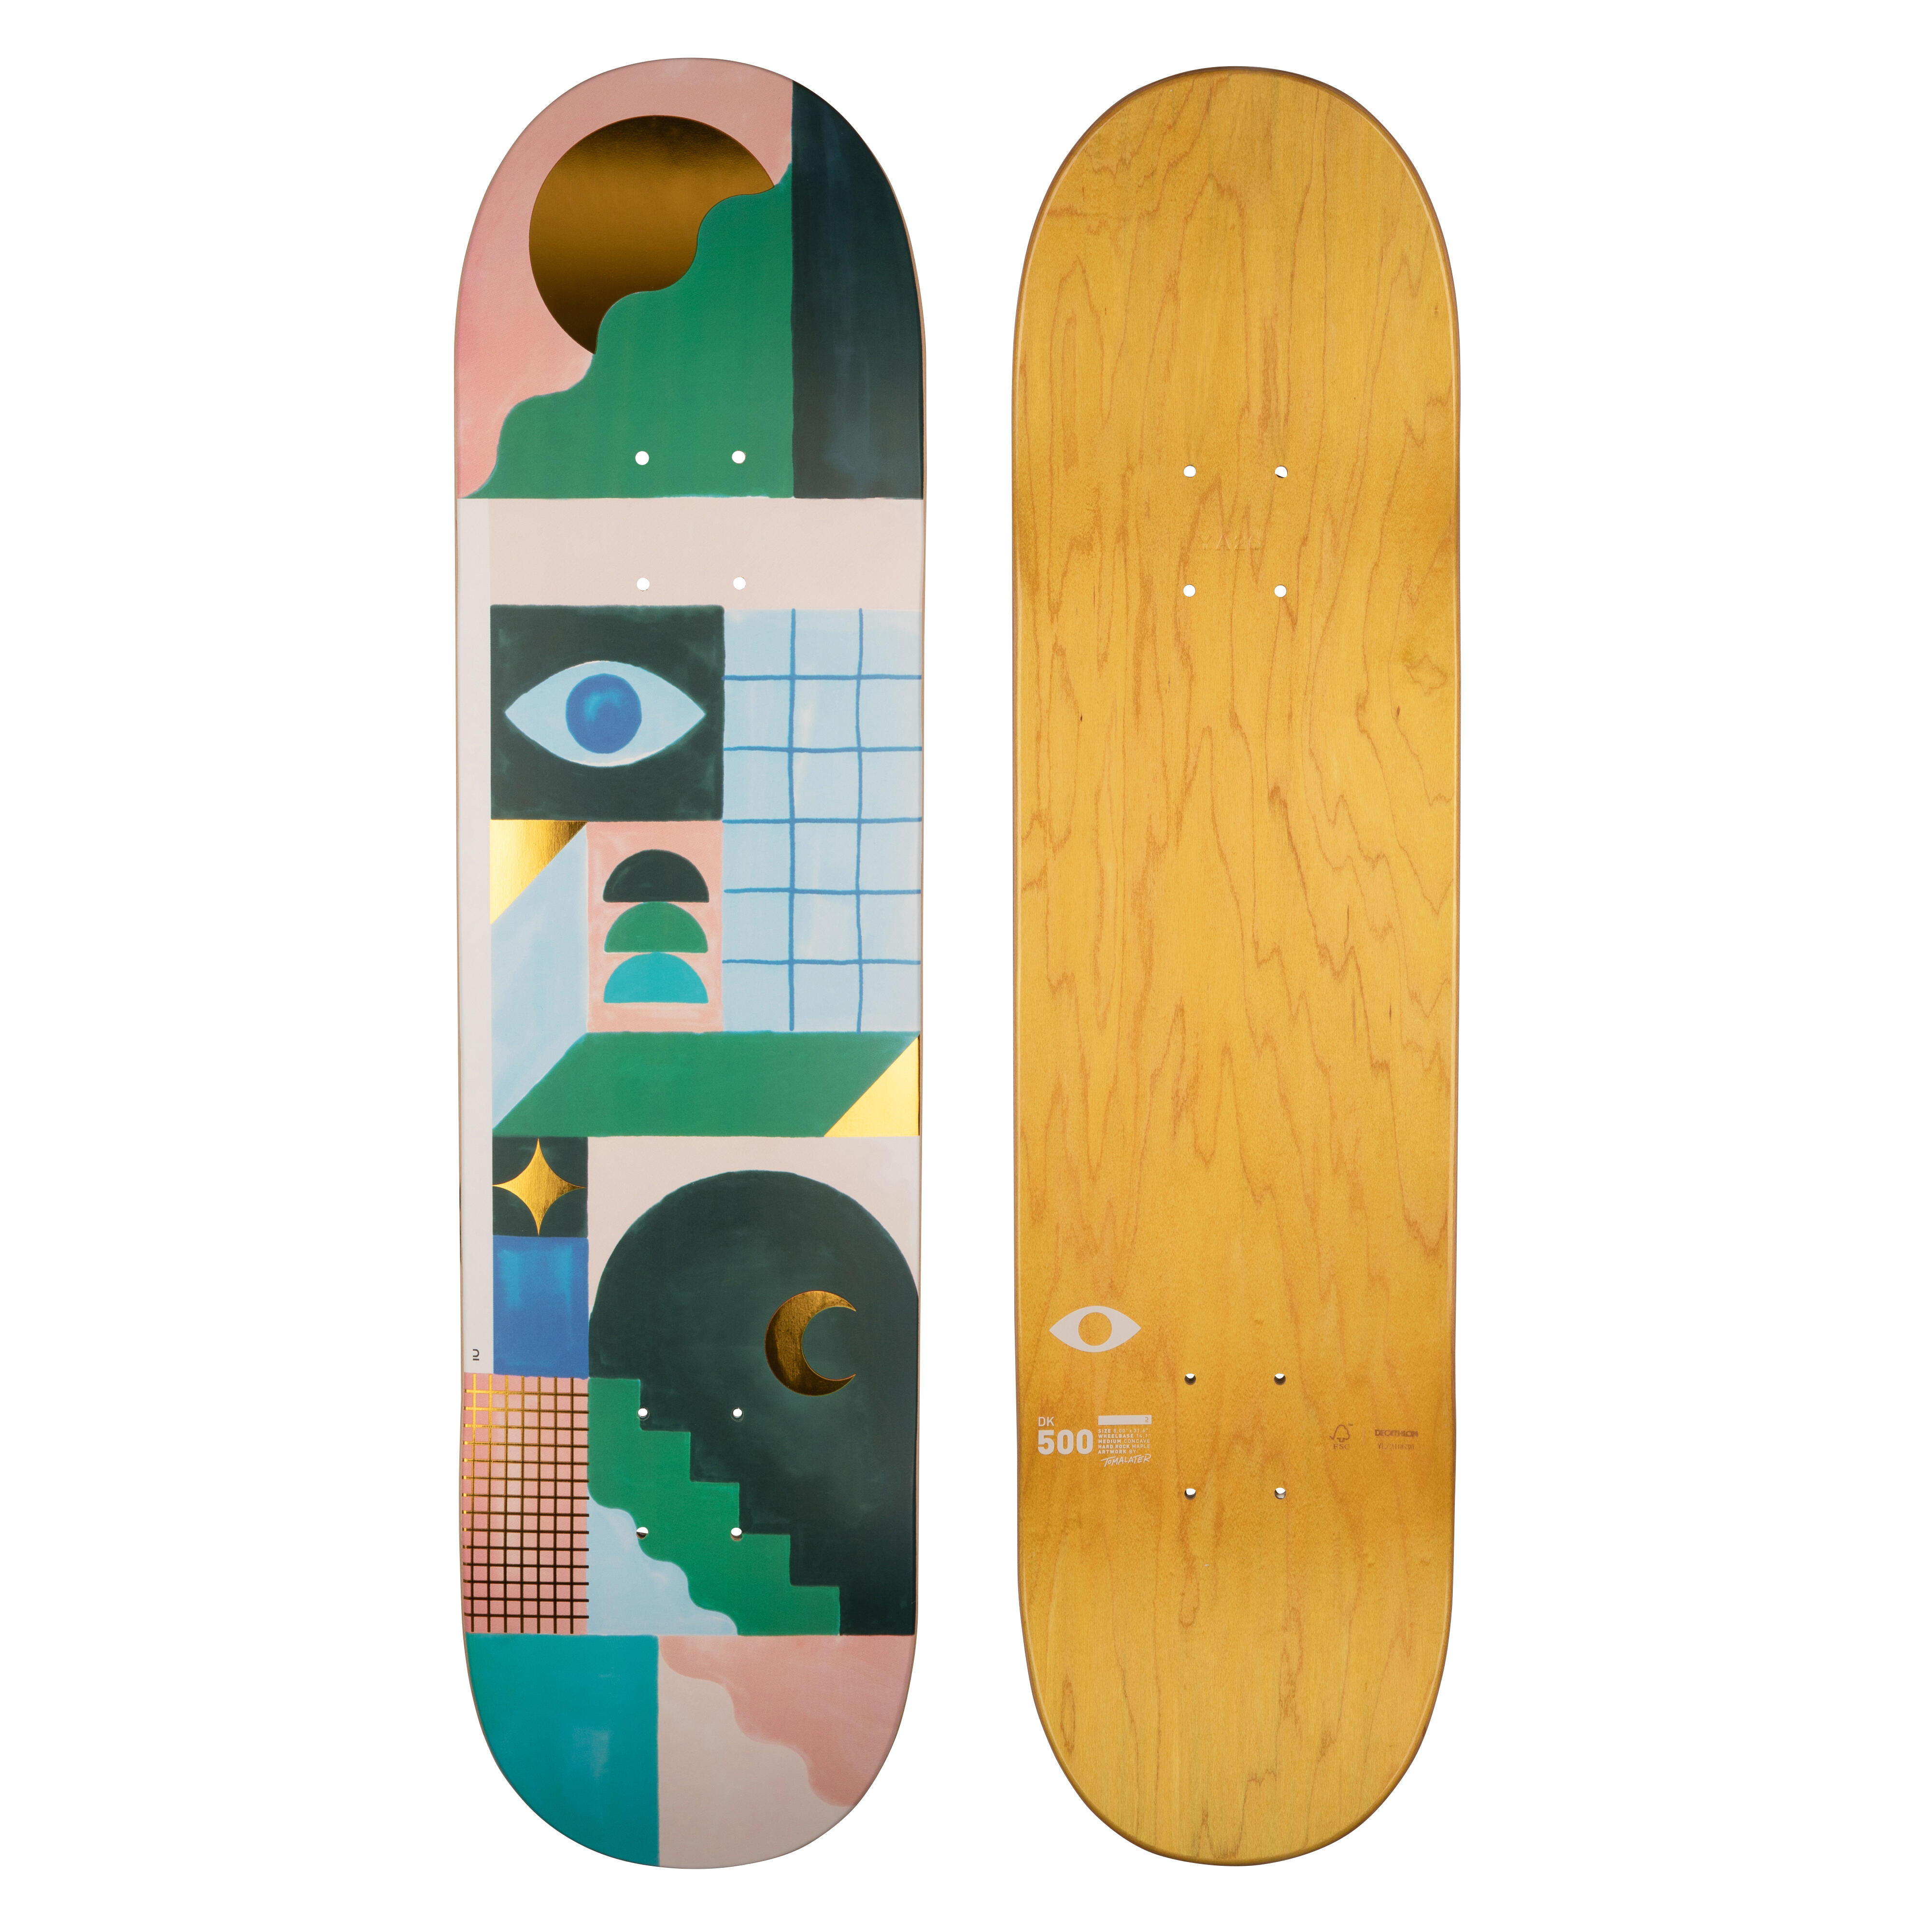 Placă skateboard DK500 Mărimea 8″Grafică de @TOMALATER @TOMALATER